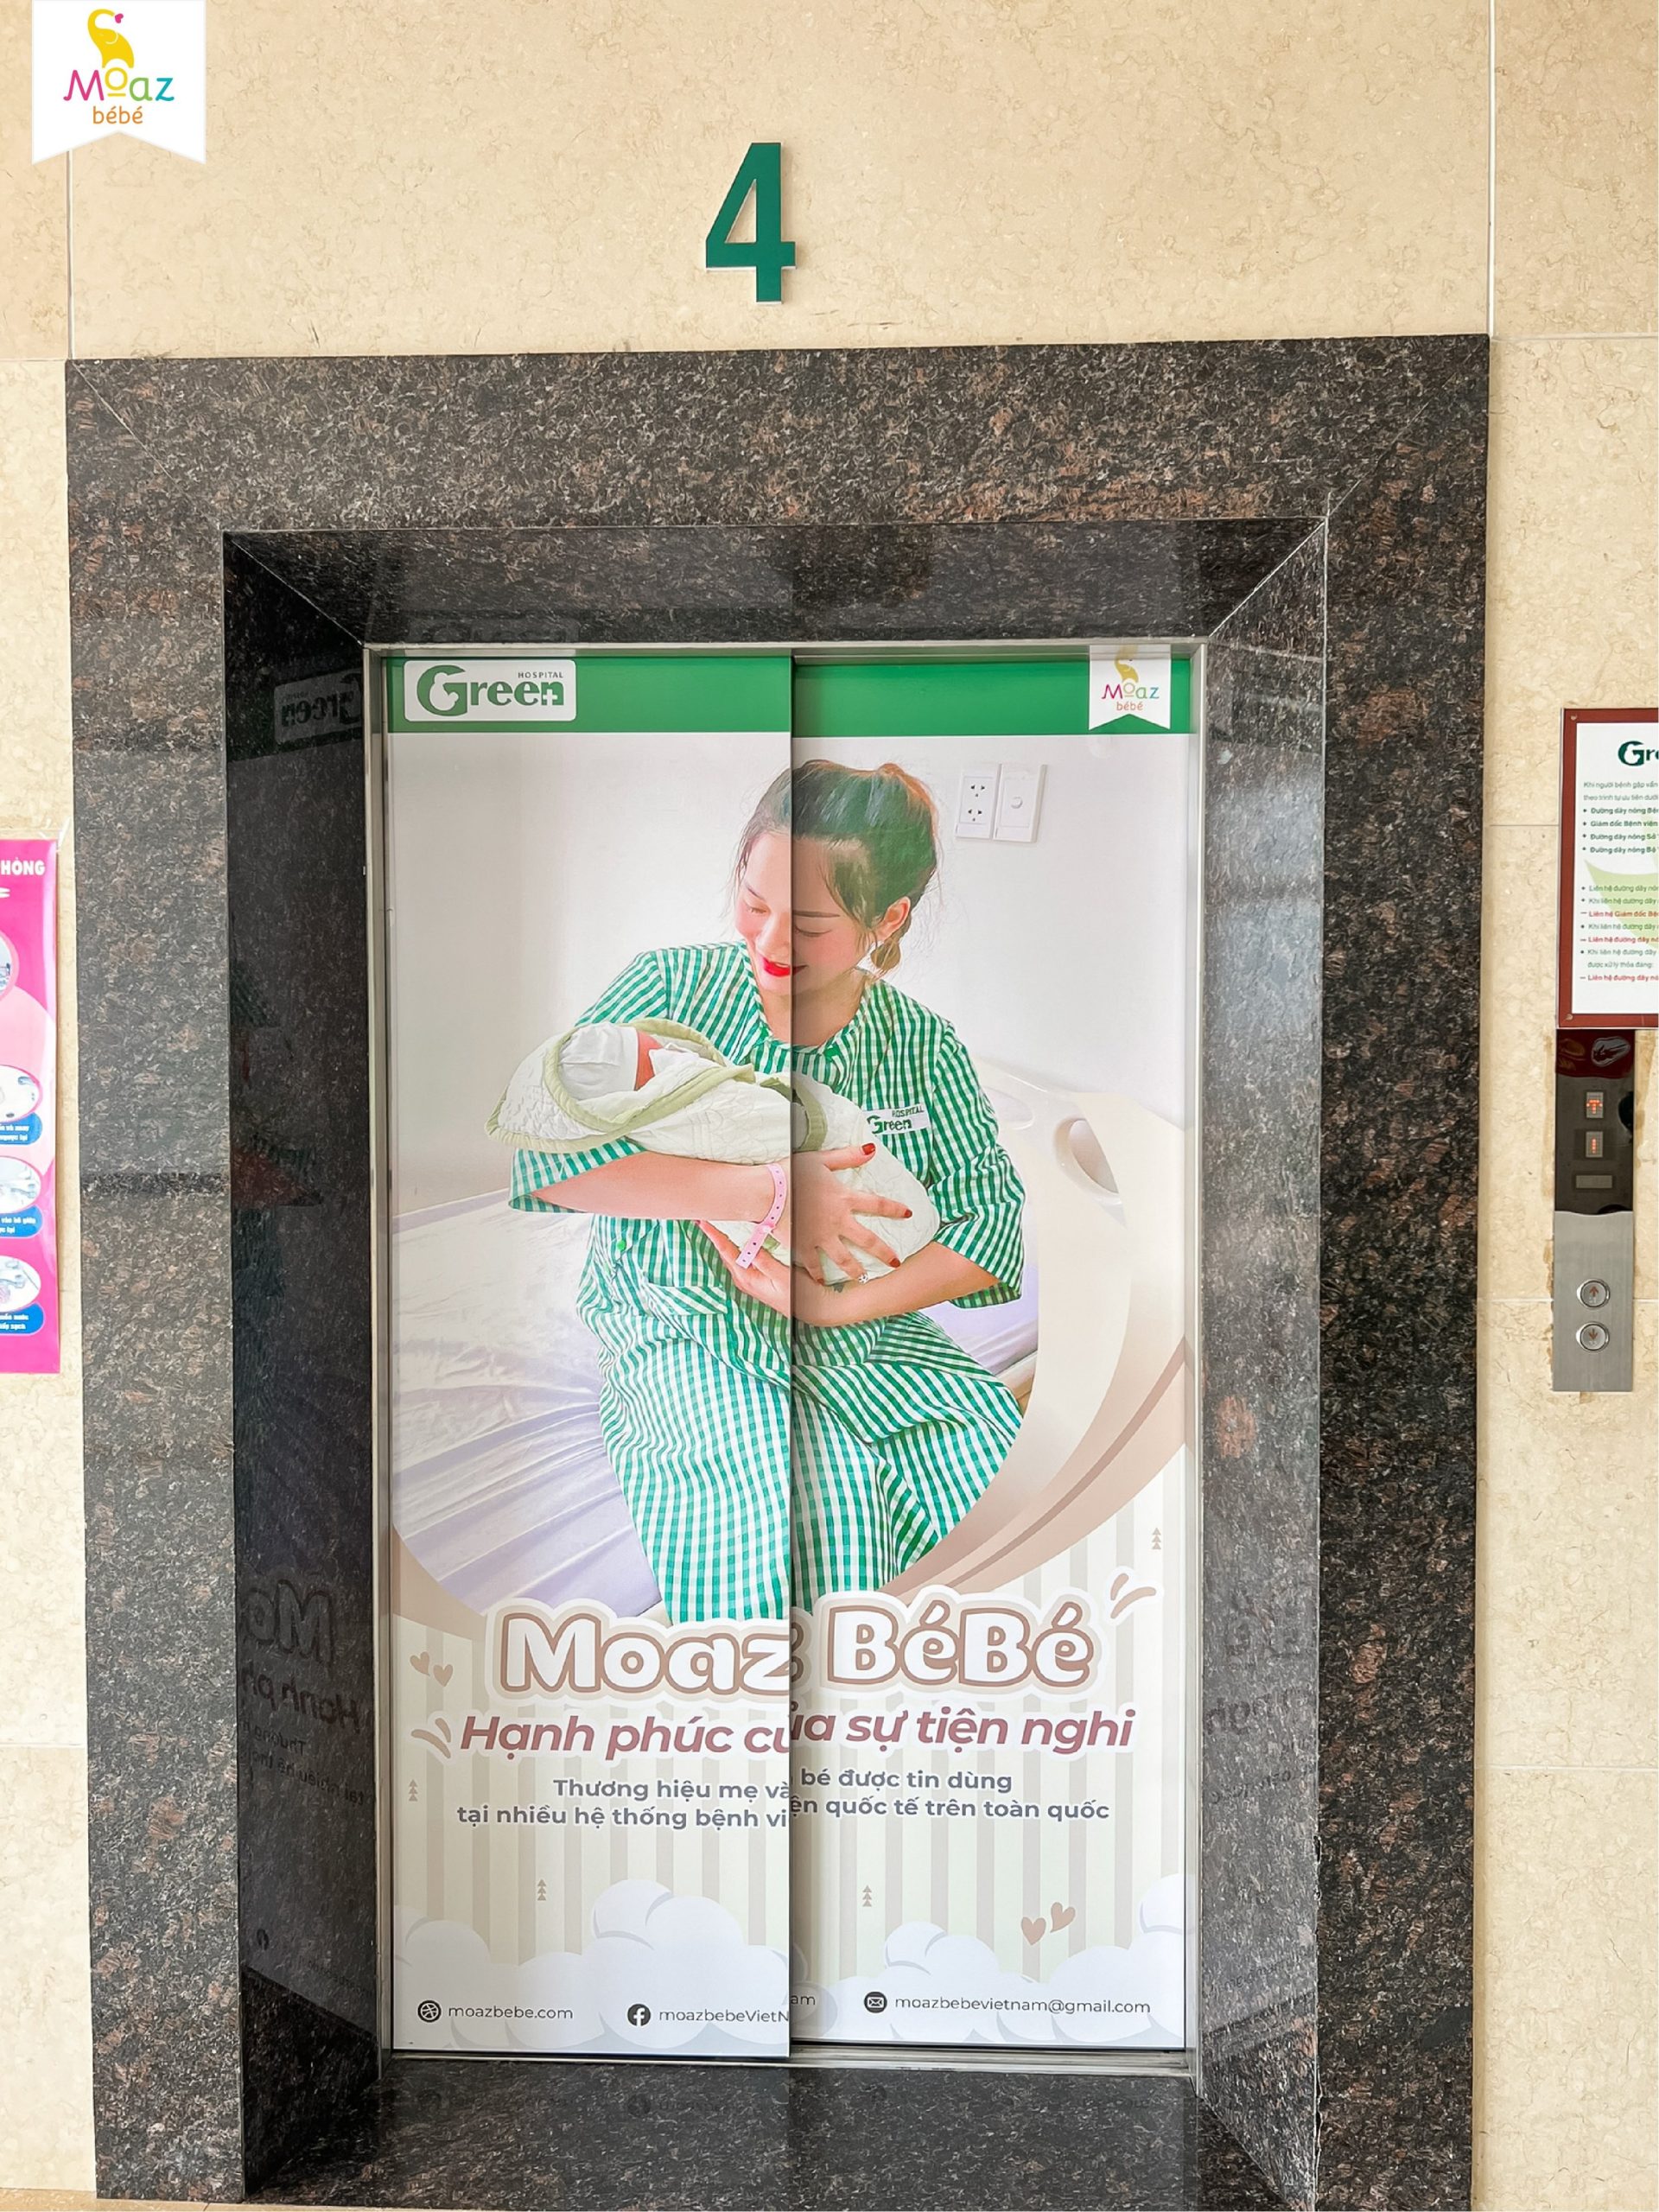 Moaz Bé Bé thương hiệu được tin tưởng sử dụng tại bệnh viện Green ( Hải Phòng)